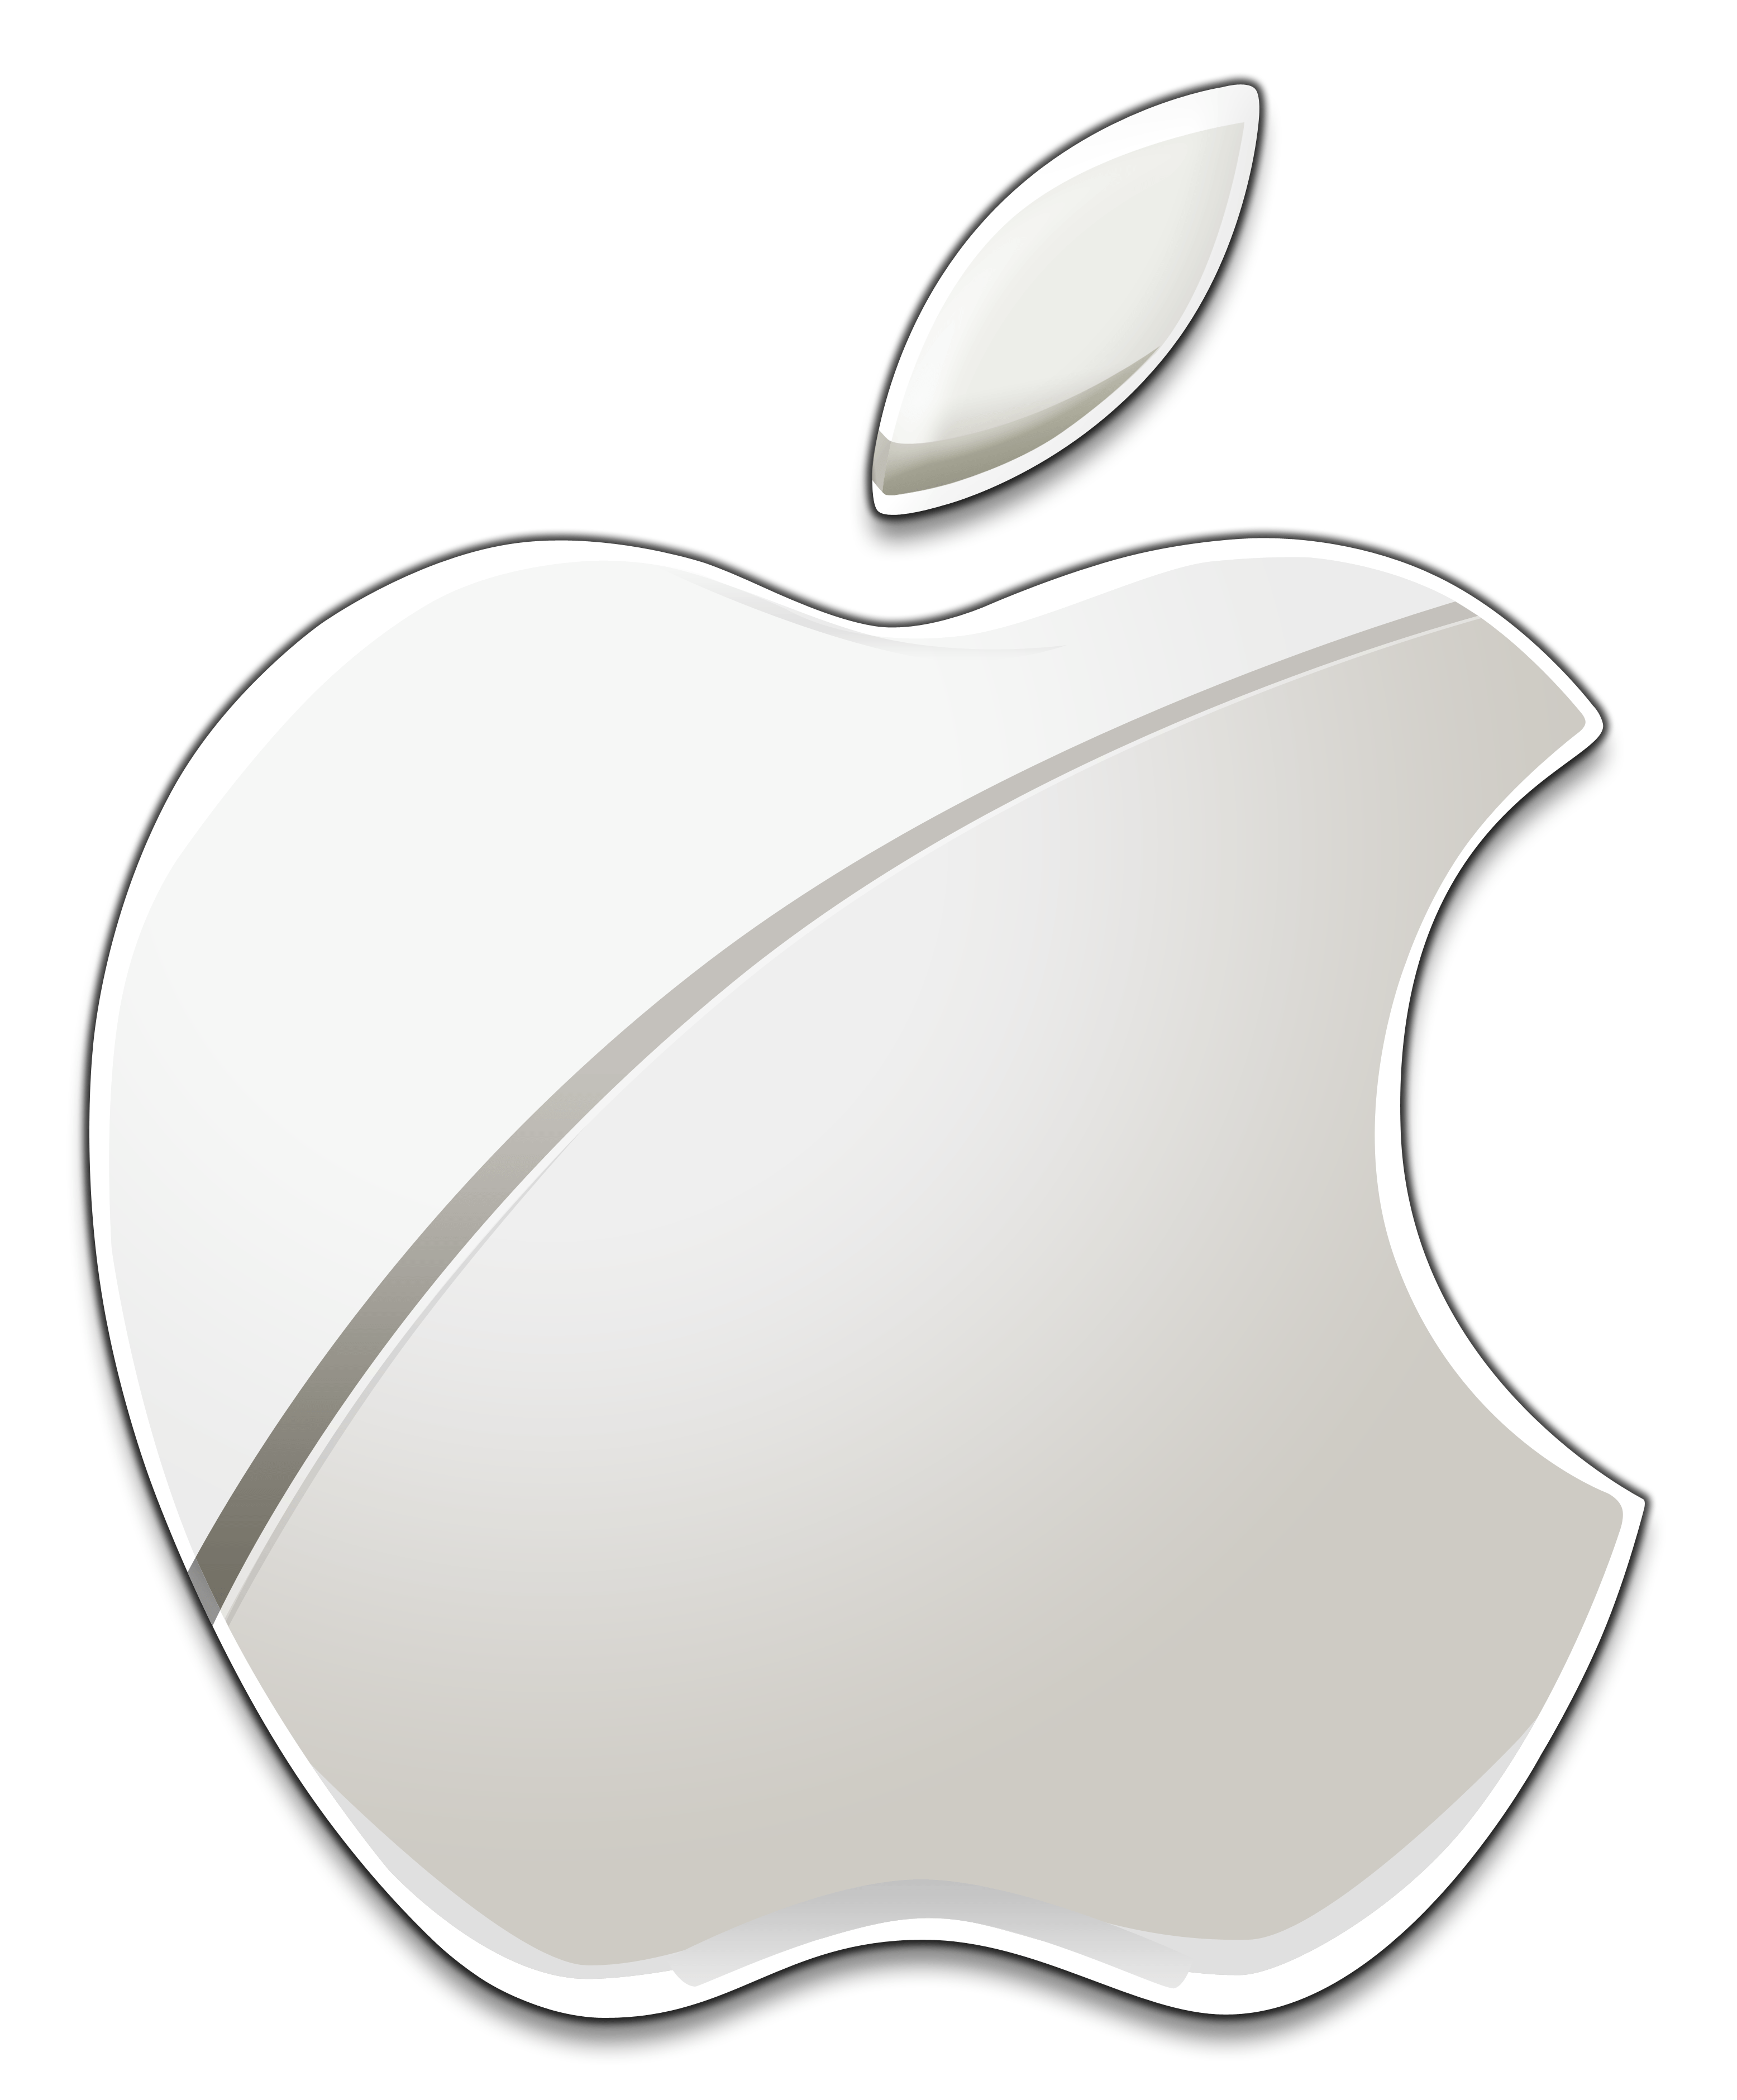 Transparent Apple Logo - Apple Logo PNG Images Transparent Free Download | PNGMart.com